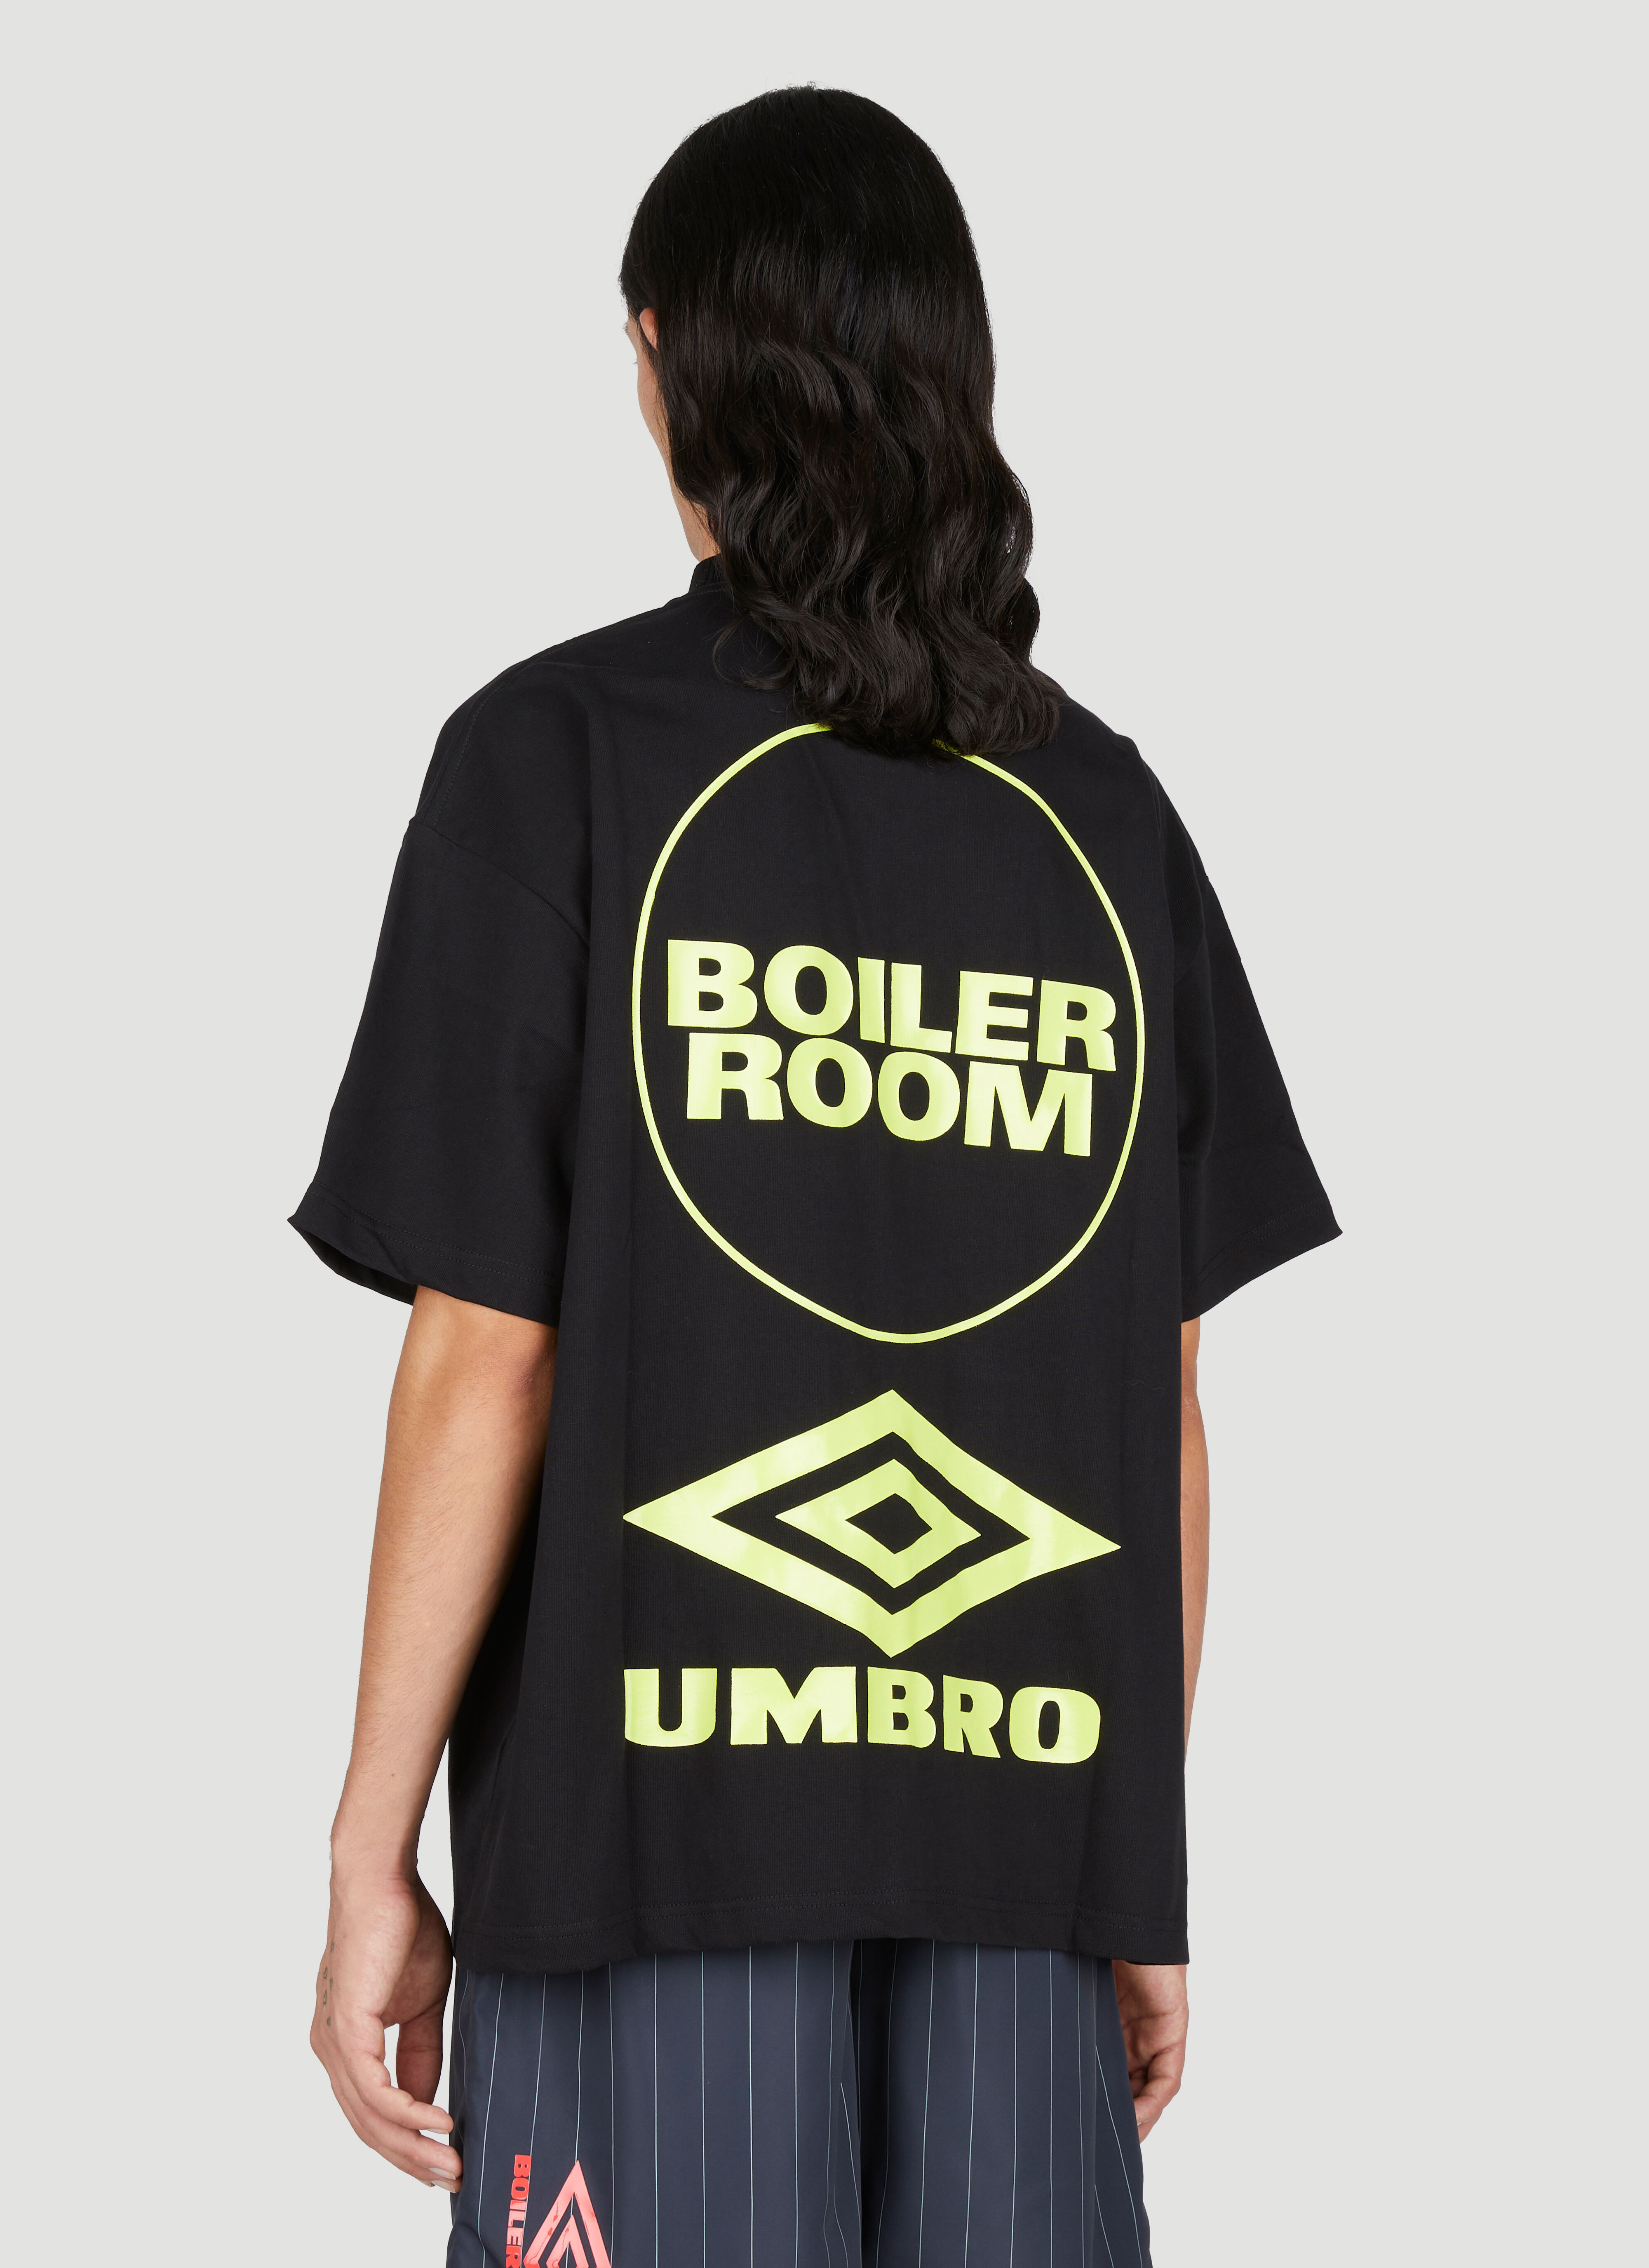 Boiler Room x Umbro Short Sleeve Training T-Shirt in Black | LN-CC®